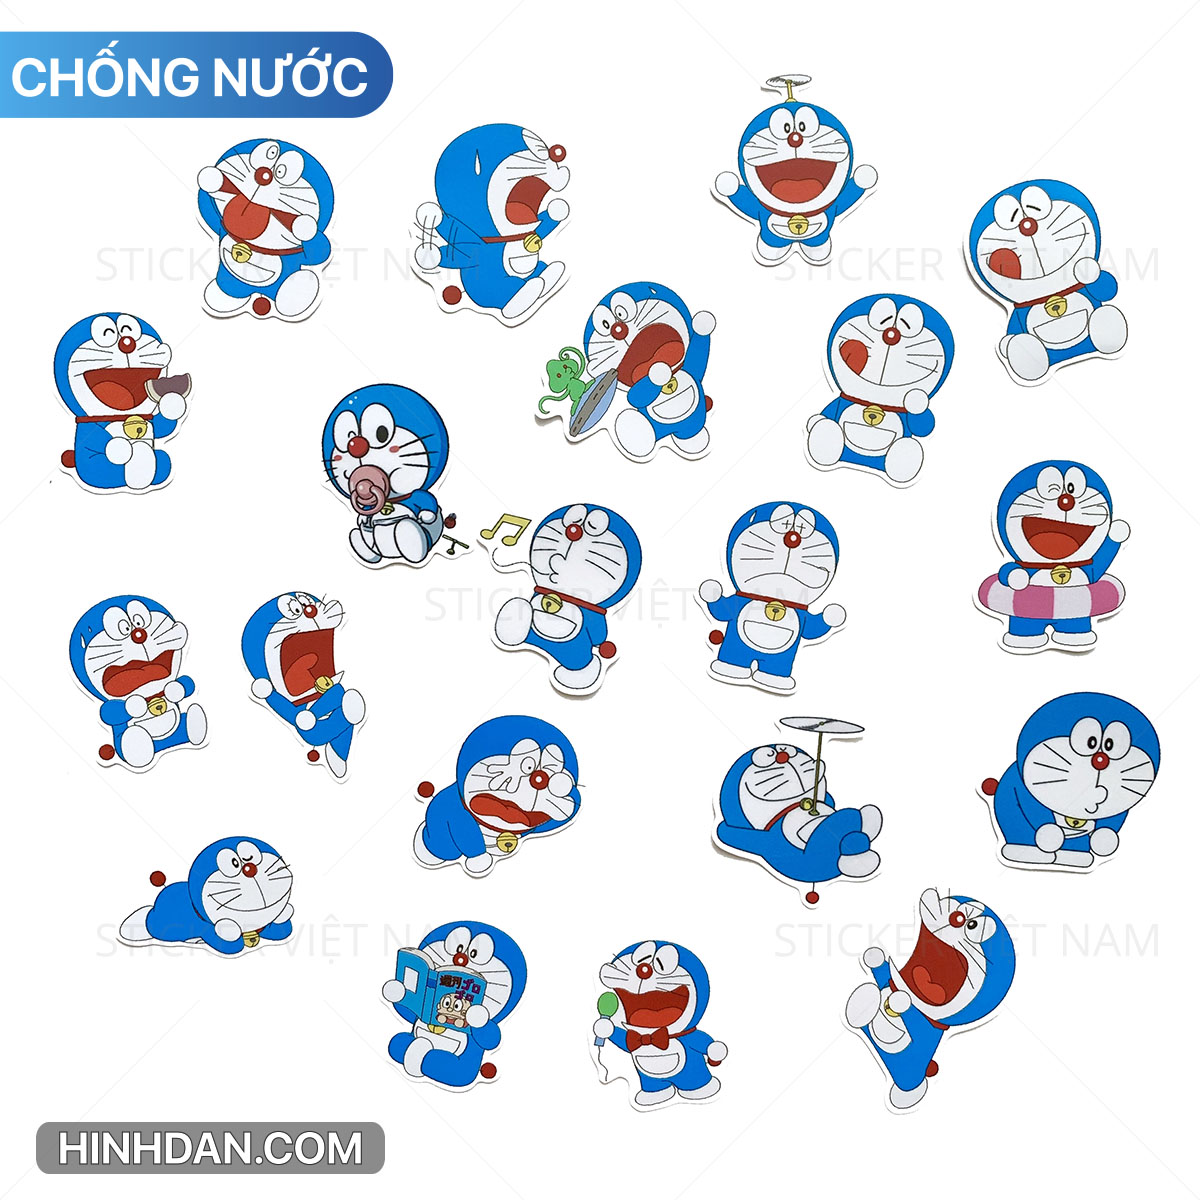 Những chiếc sticker Doraemon cực kỳ đáng yêu và dễ thương, khiến bạn không thể dừng lại việc sử dụng chúng. Chúng được sử dụng phổ biến trên các mạng xã hội và làm cho cuộc trò chuyện của bạn trở nên thú vị hơn. Hãy xem những chú sticker Doraemon này nhé!